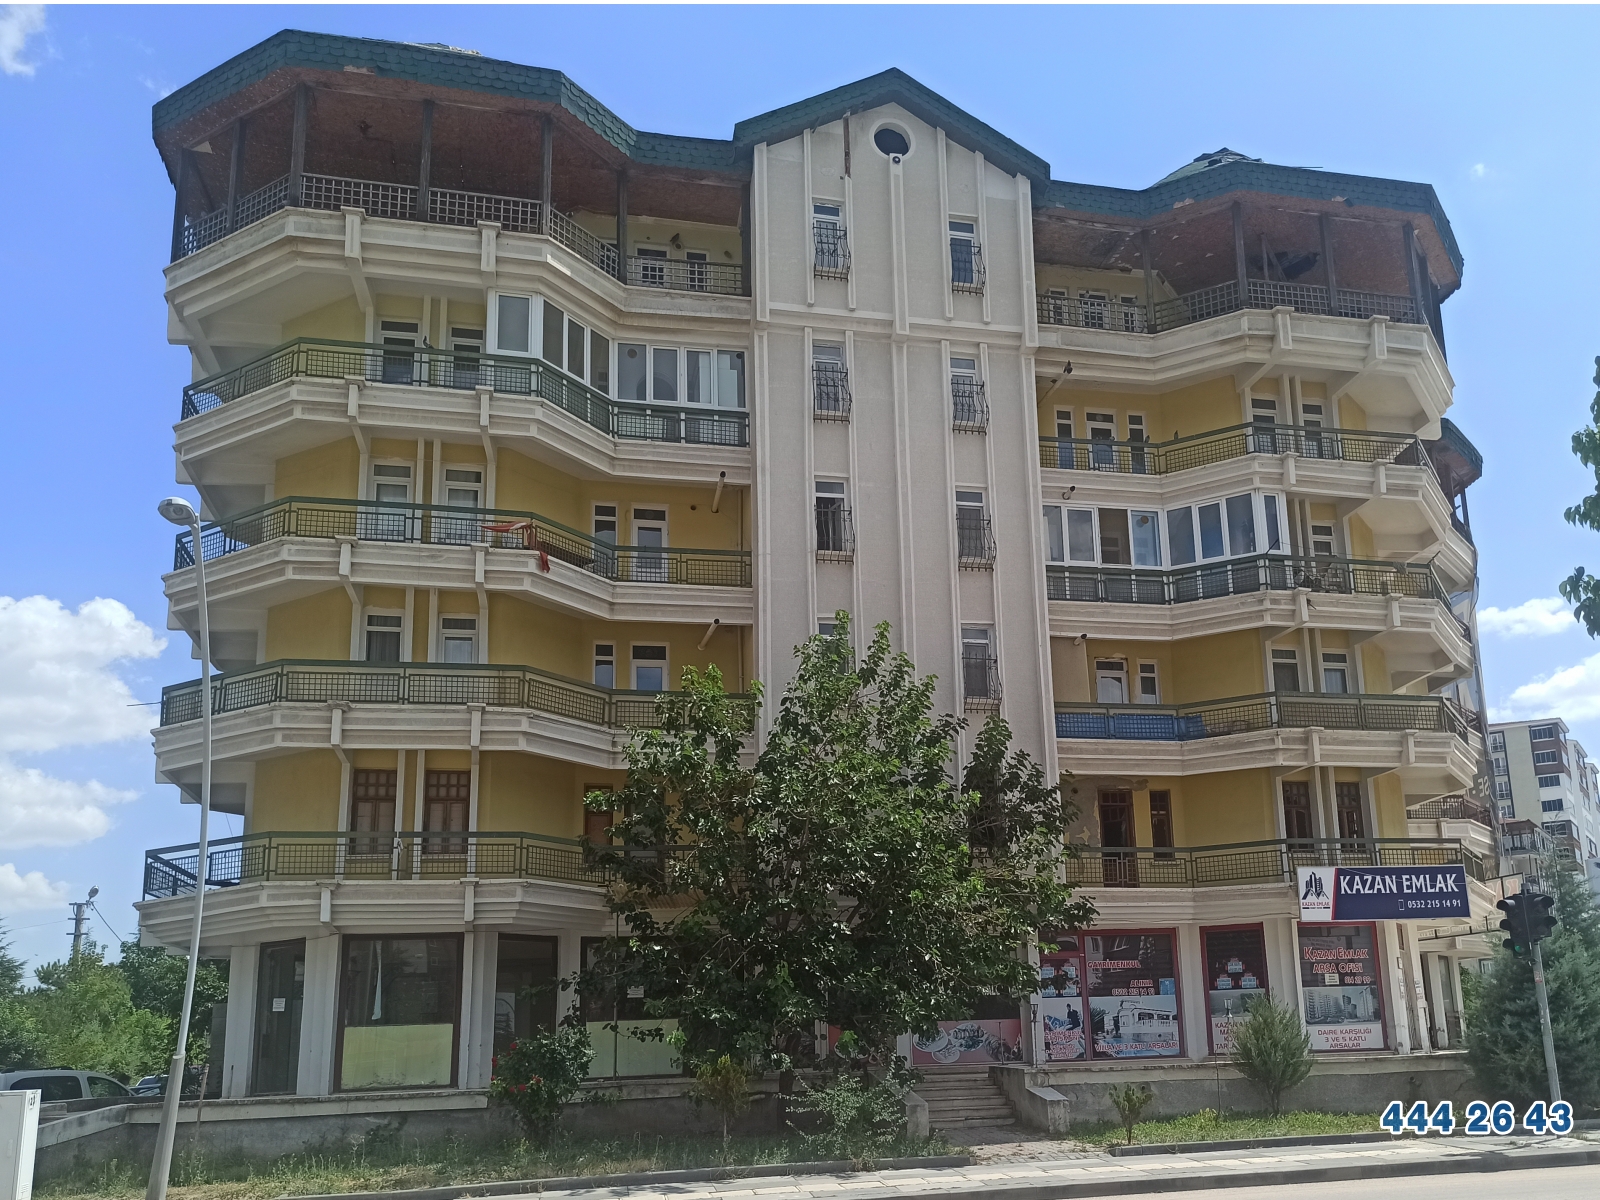 Burgan Bank'tan Ankara Kahramankazan'da 39 m² Dükkan